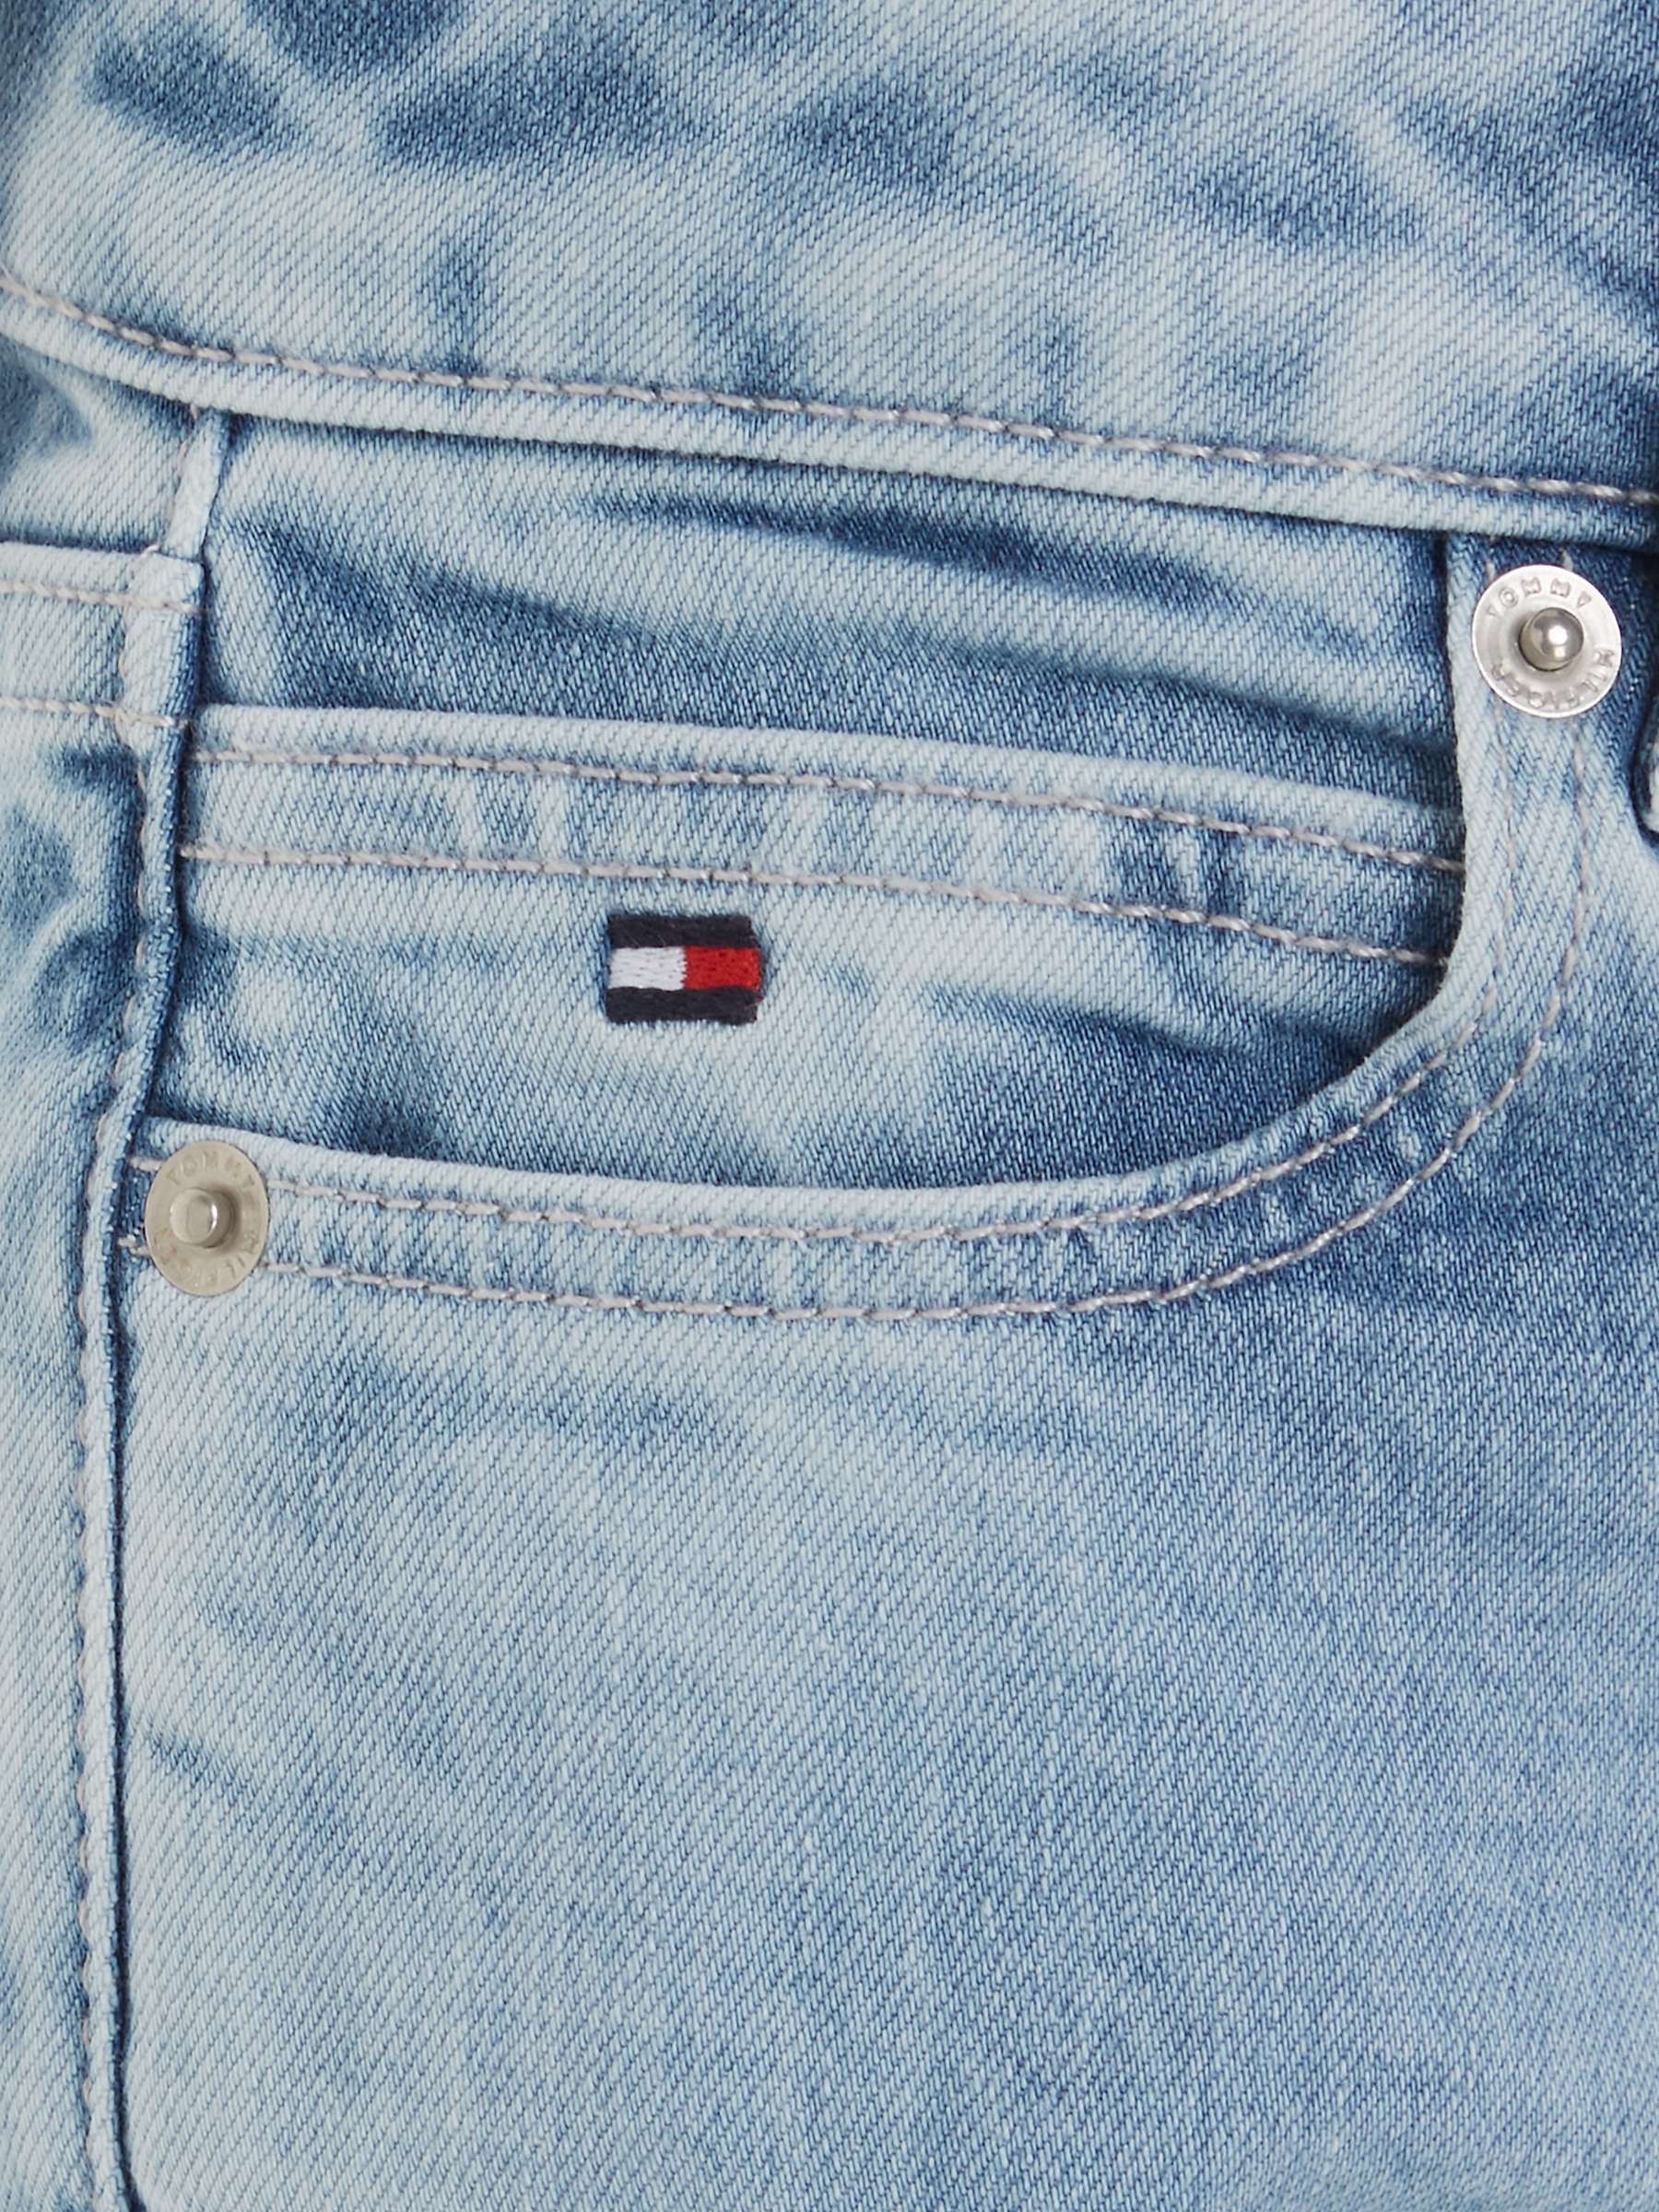 Buy Tommy Hilfiger Kids' Modern Straight Fit Jeans, Salt & Pepper Light Online at johnlewis.com